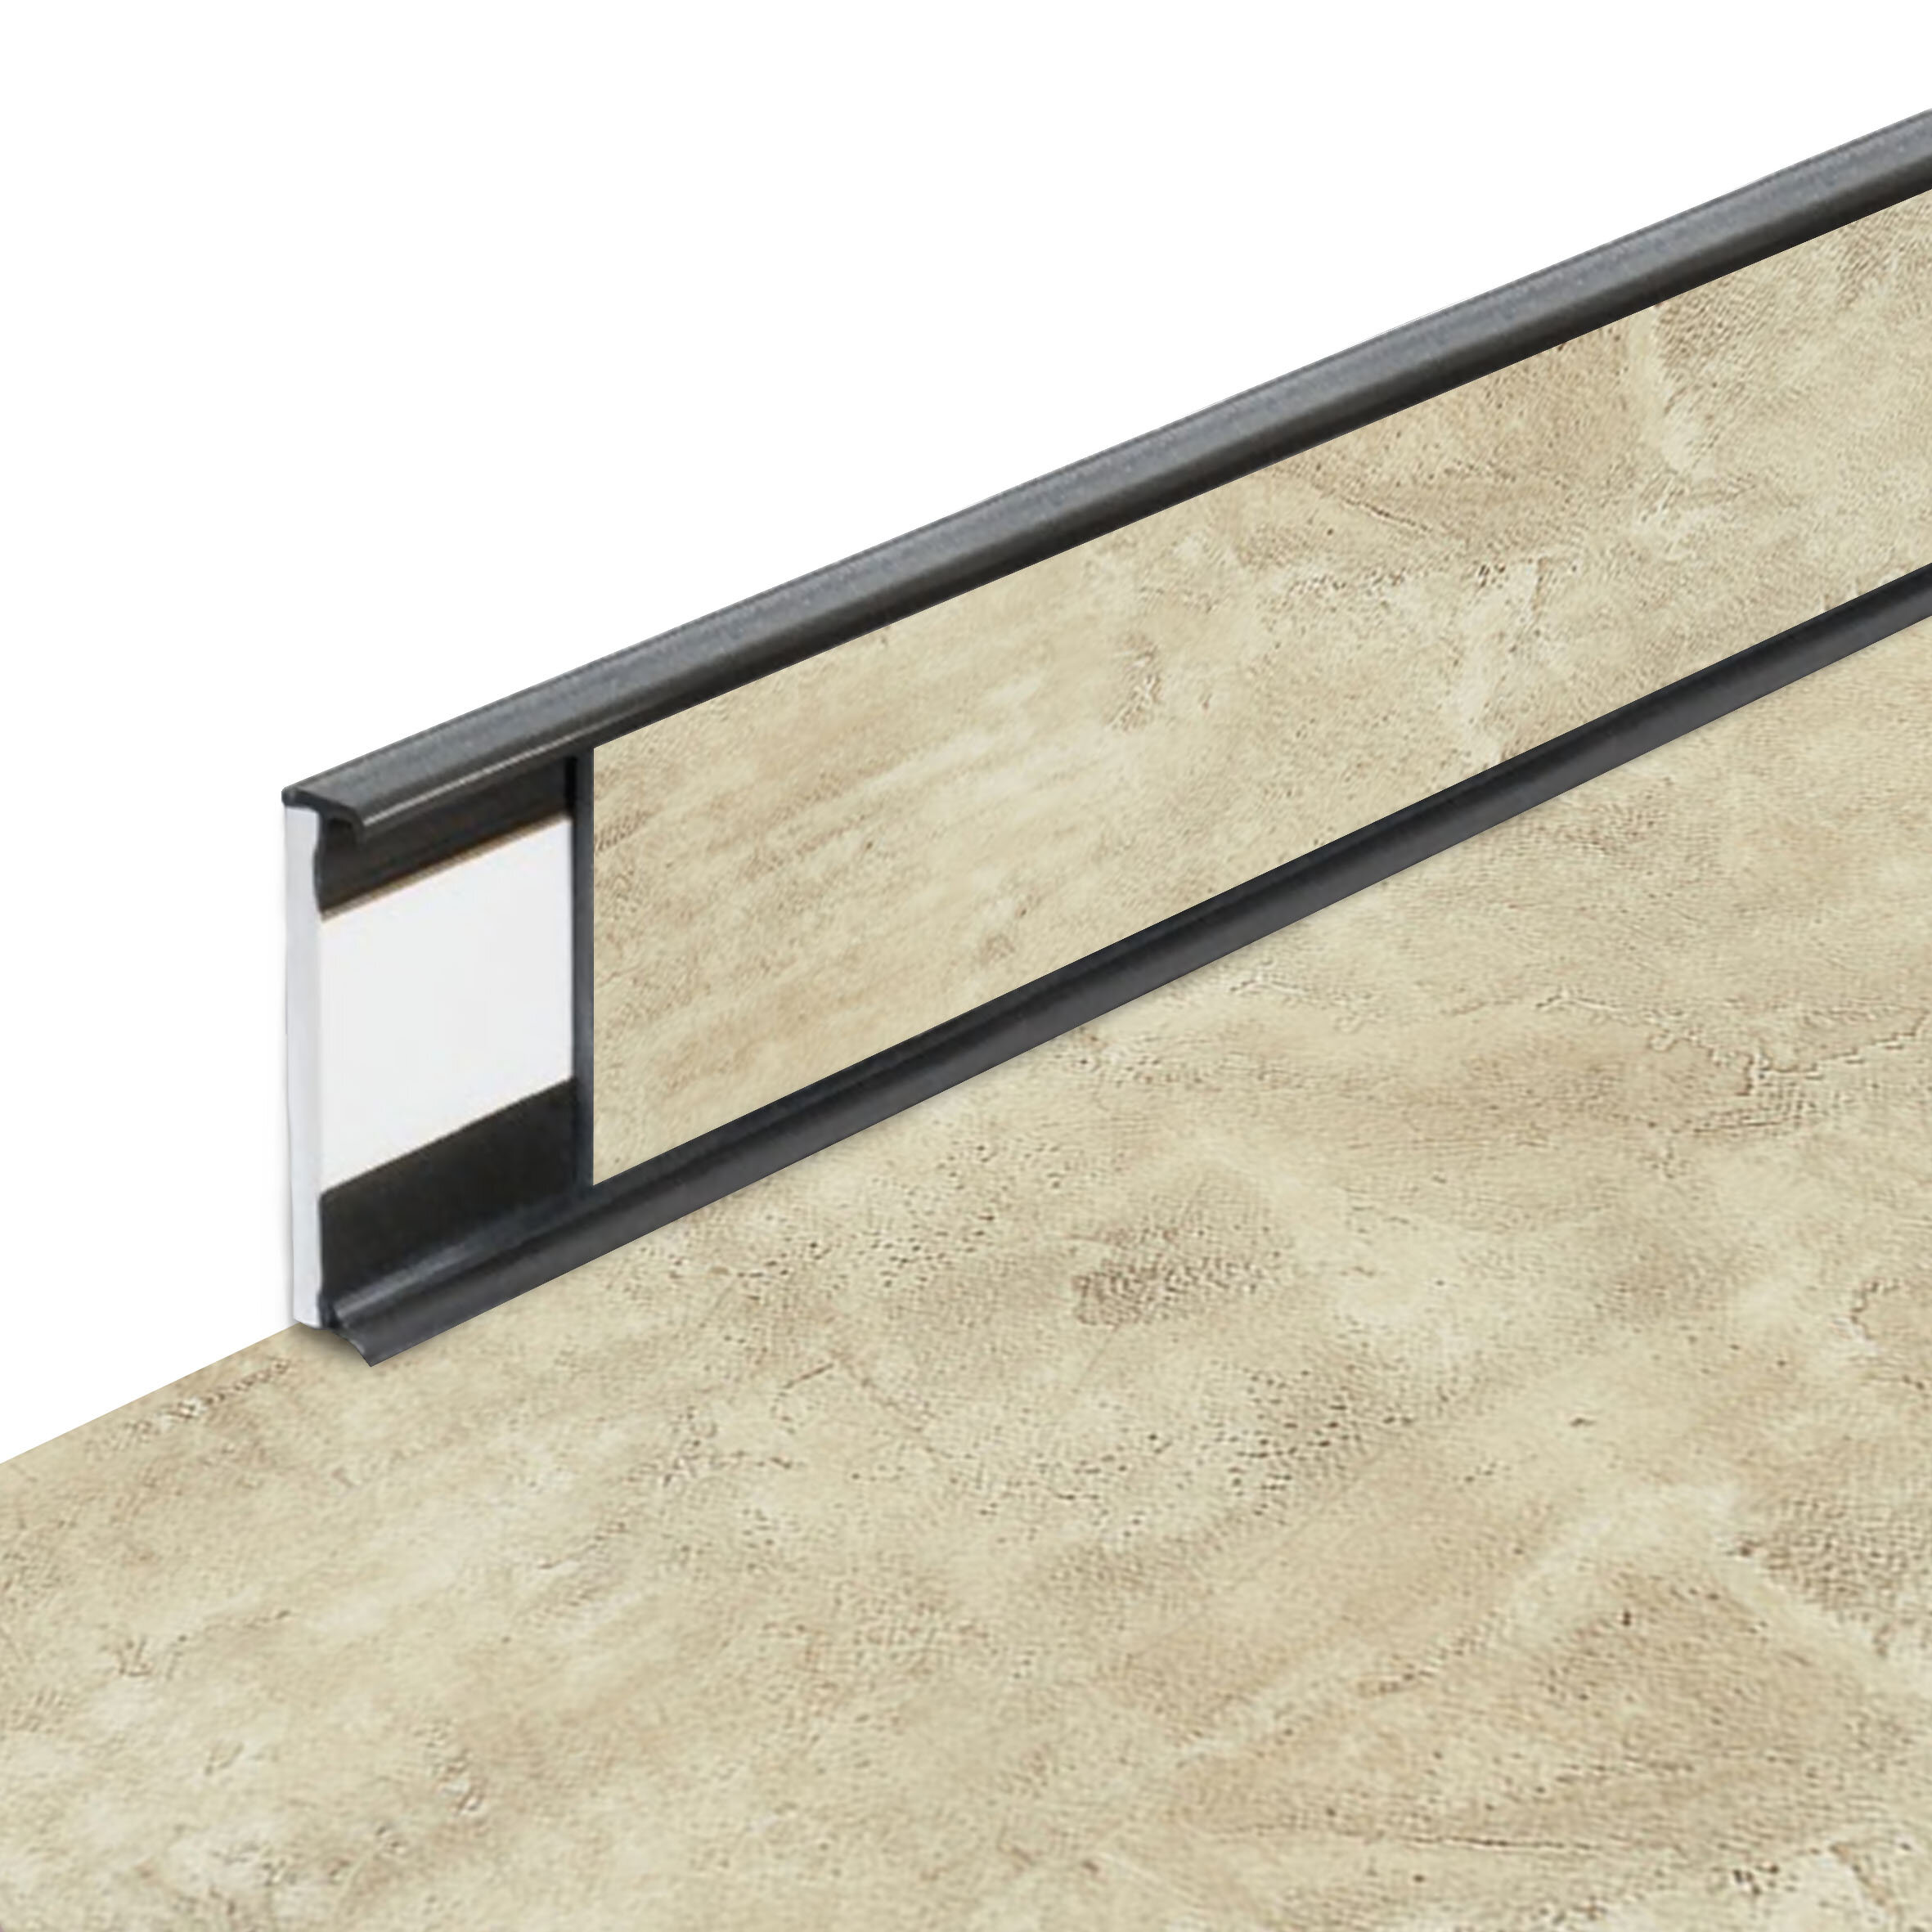 PVC vinylová soklová podlahová lišta Fortelock Business Forsen Sea Bay C016 Graphite - délka 200 cm, výška 5,8 cm, tloušťka 1,2 cm